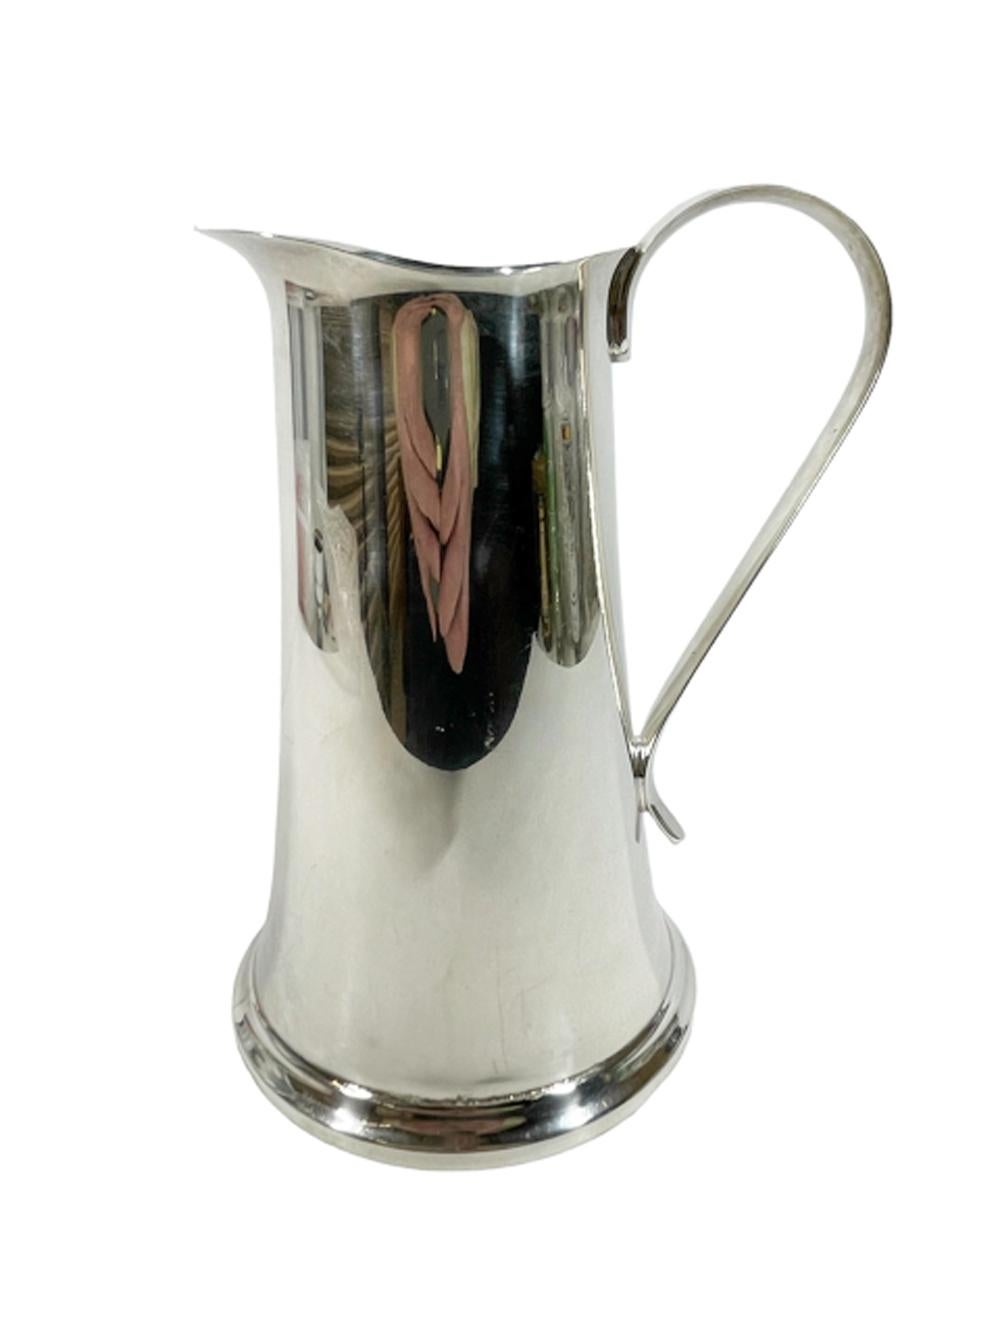 Pichet de bar / cocktail en métal argenté du milieu du siècle par The Sheffield Silver Company, de forme effilée avec une poignée appliquée et un filtre / barrage à glace intégré à l'intérieur de la lèvre.